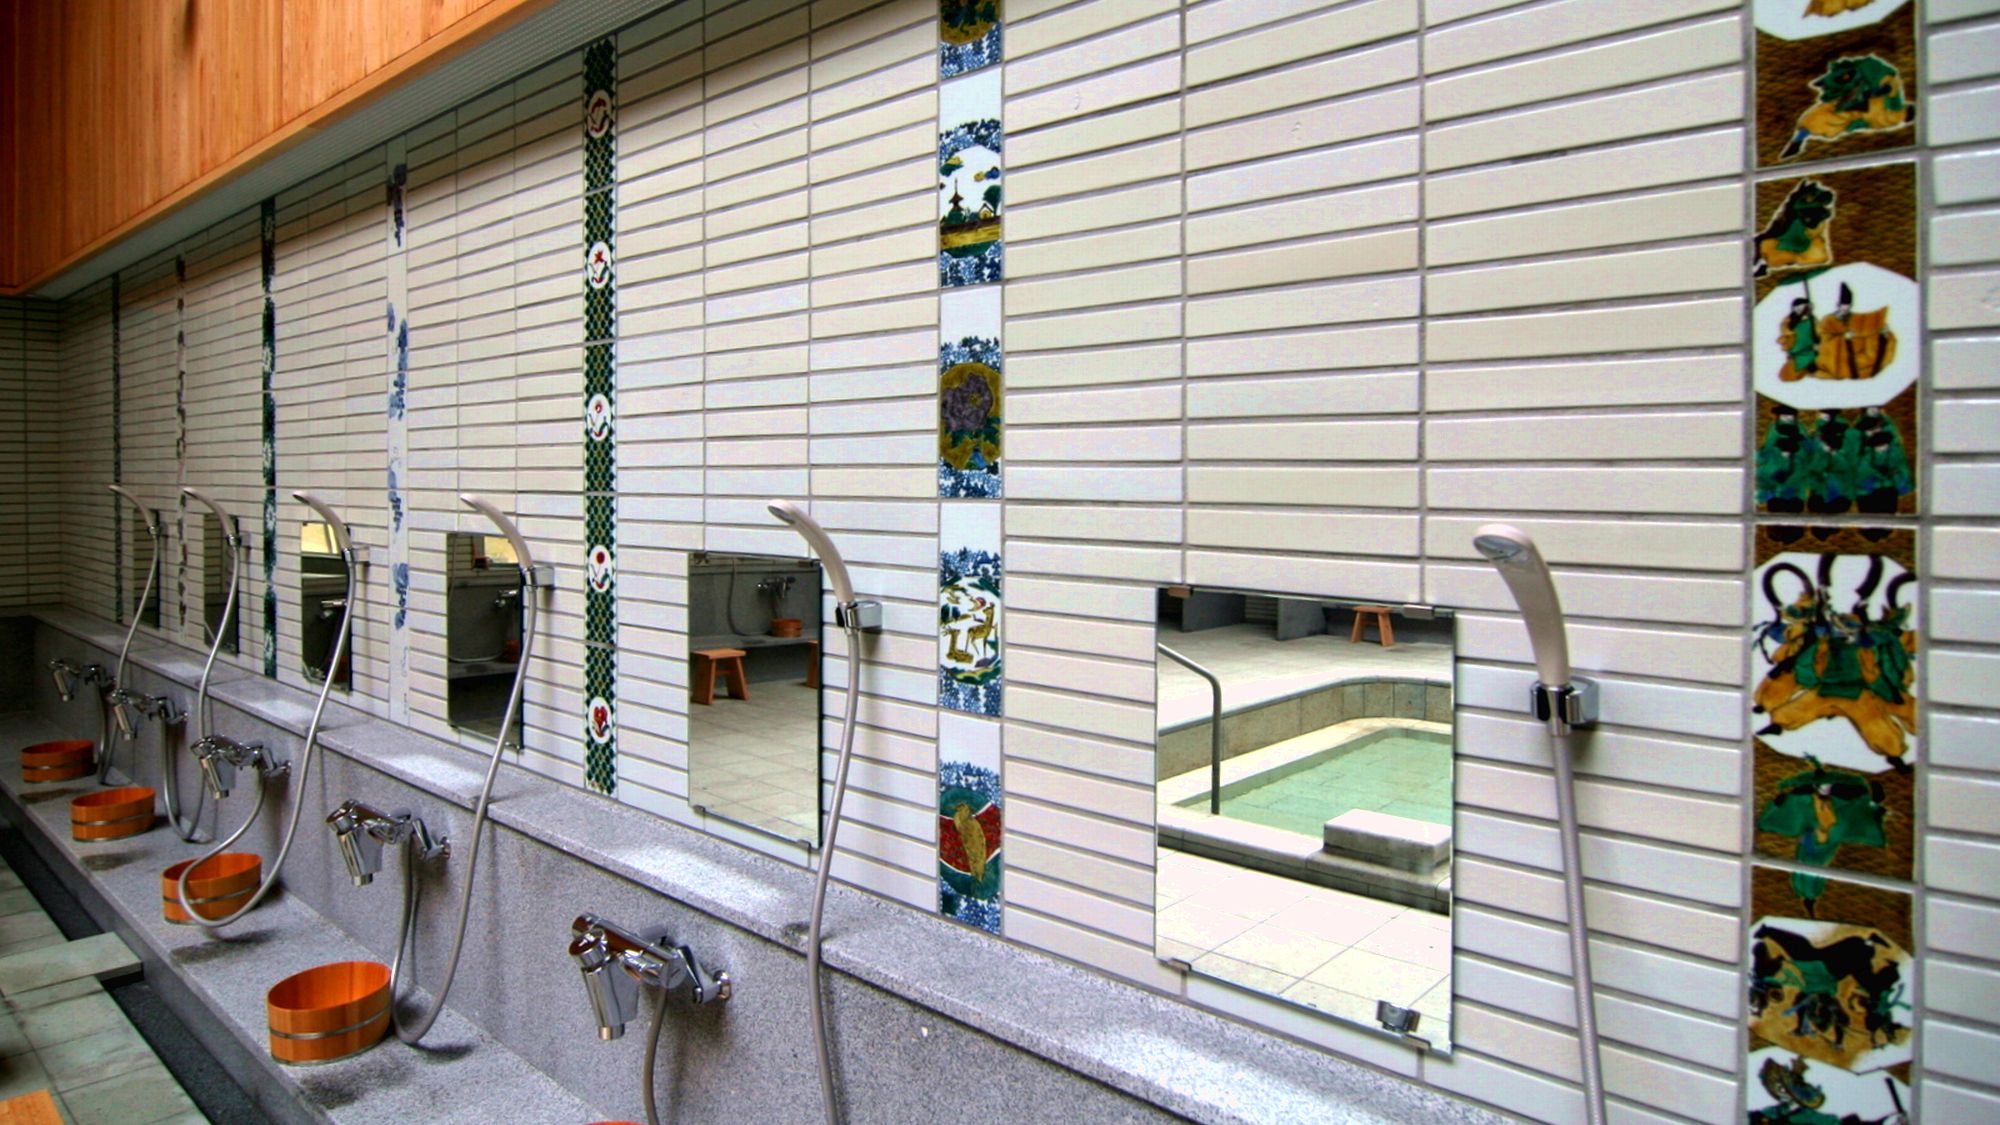 【新総湯・女湯】地元作家が手がけた九谷焼タイルの装飾がお洒落な共同浴場です。